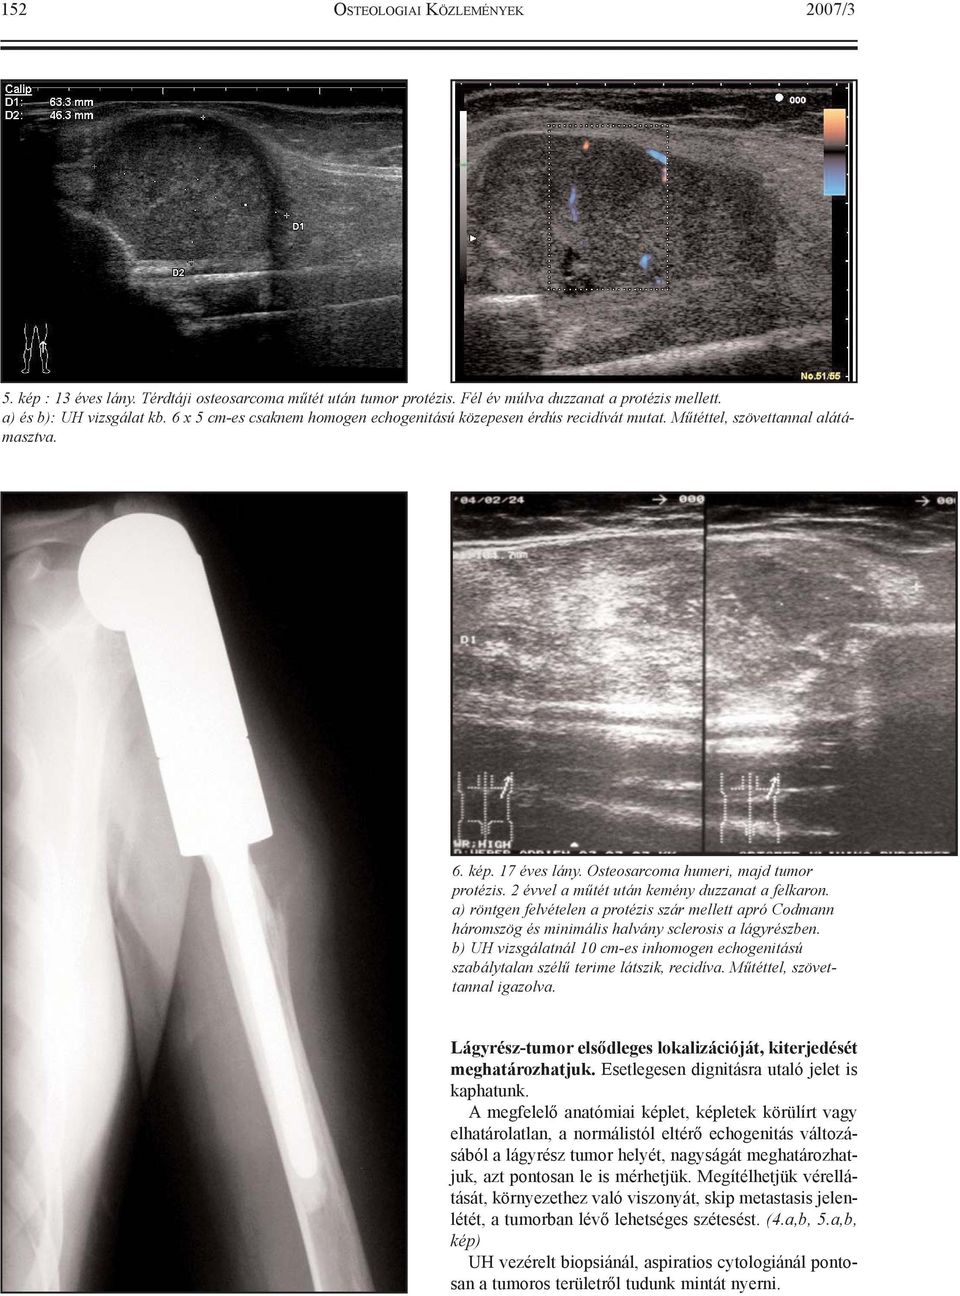 2 évvel a mûtét után kemény duzzanat a felkaron. a) röntgen felvételen a protézis szár mellett apró Codmann háromszög és minimális halvány sclerosis a lágyrészben.